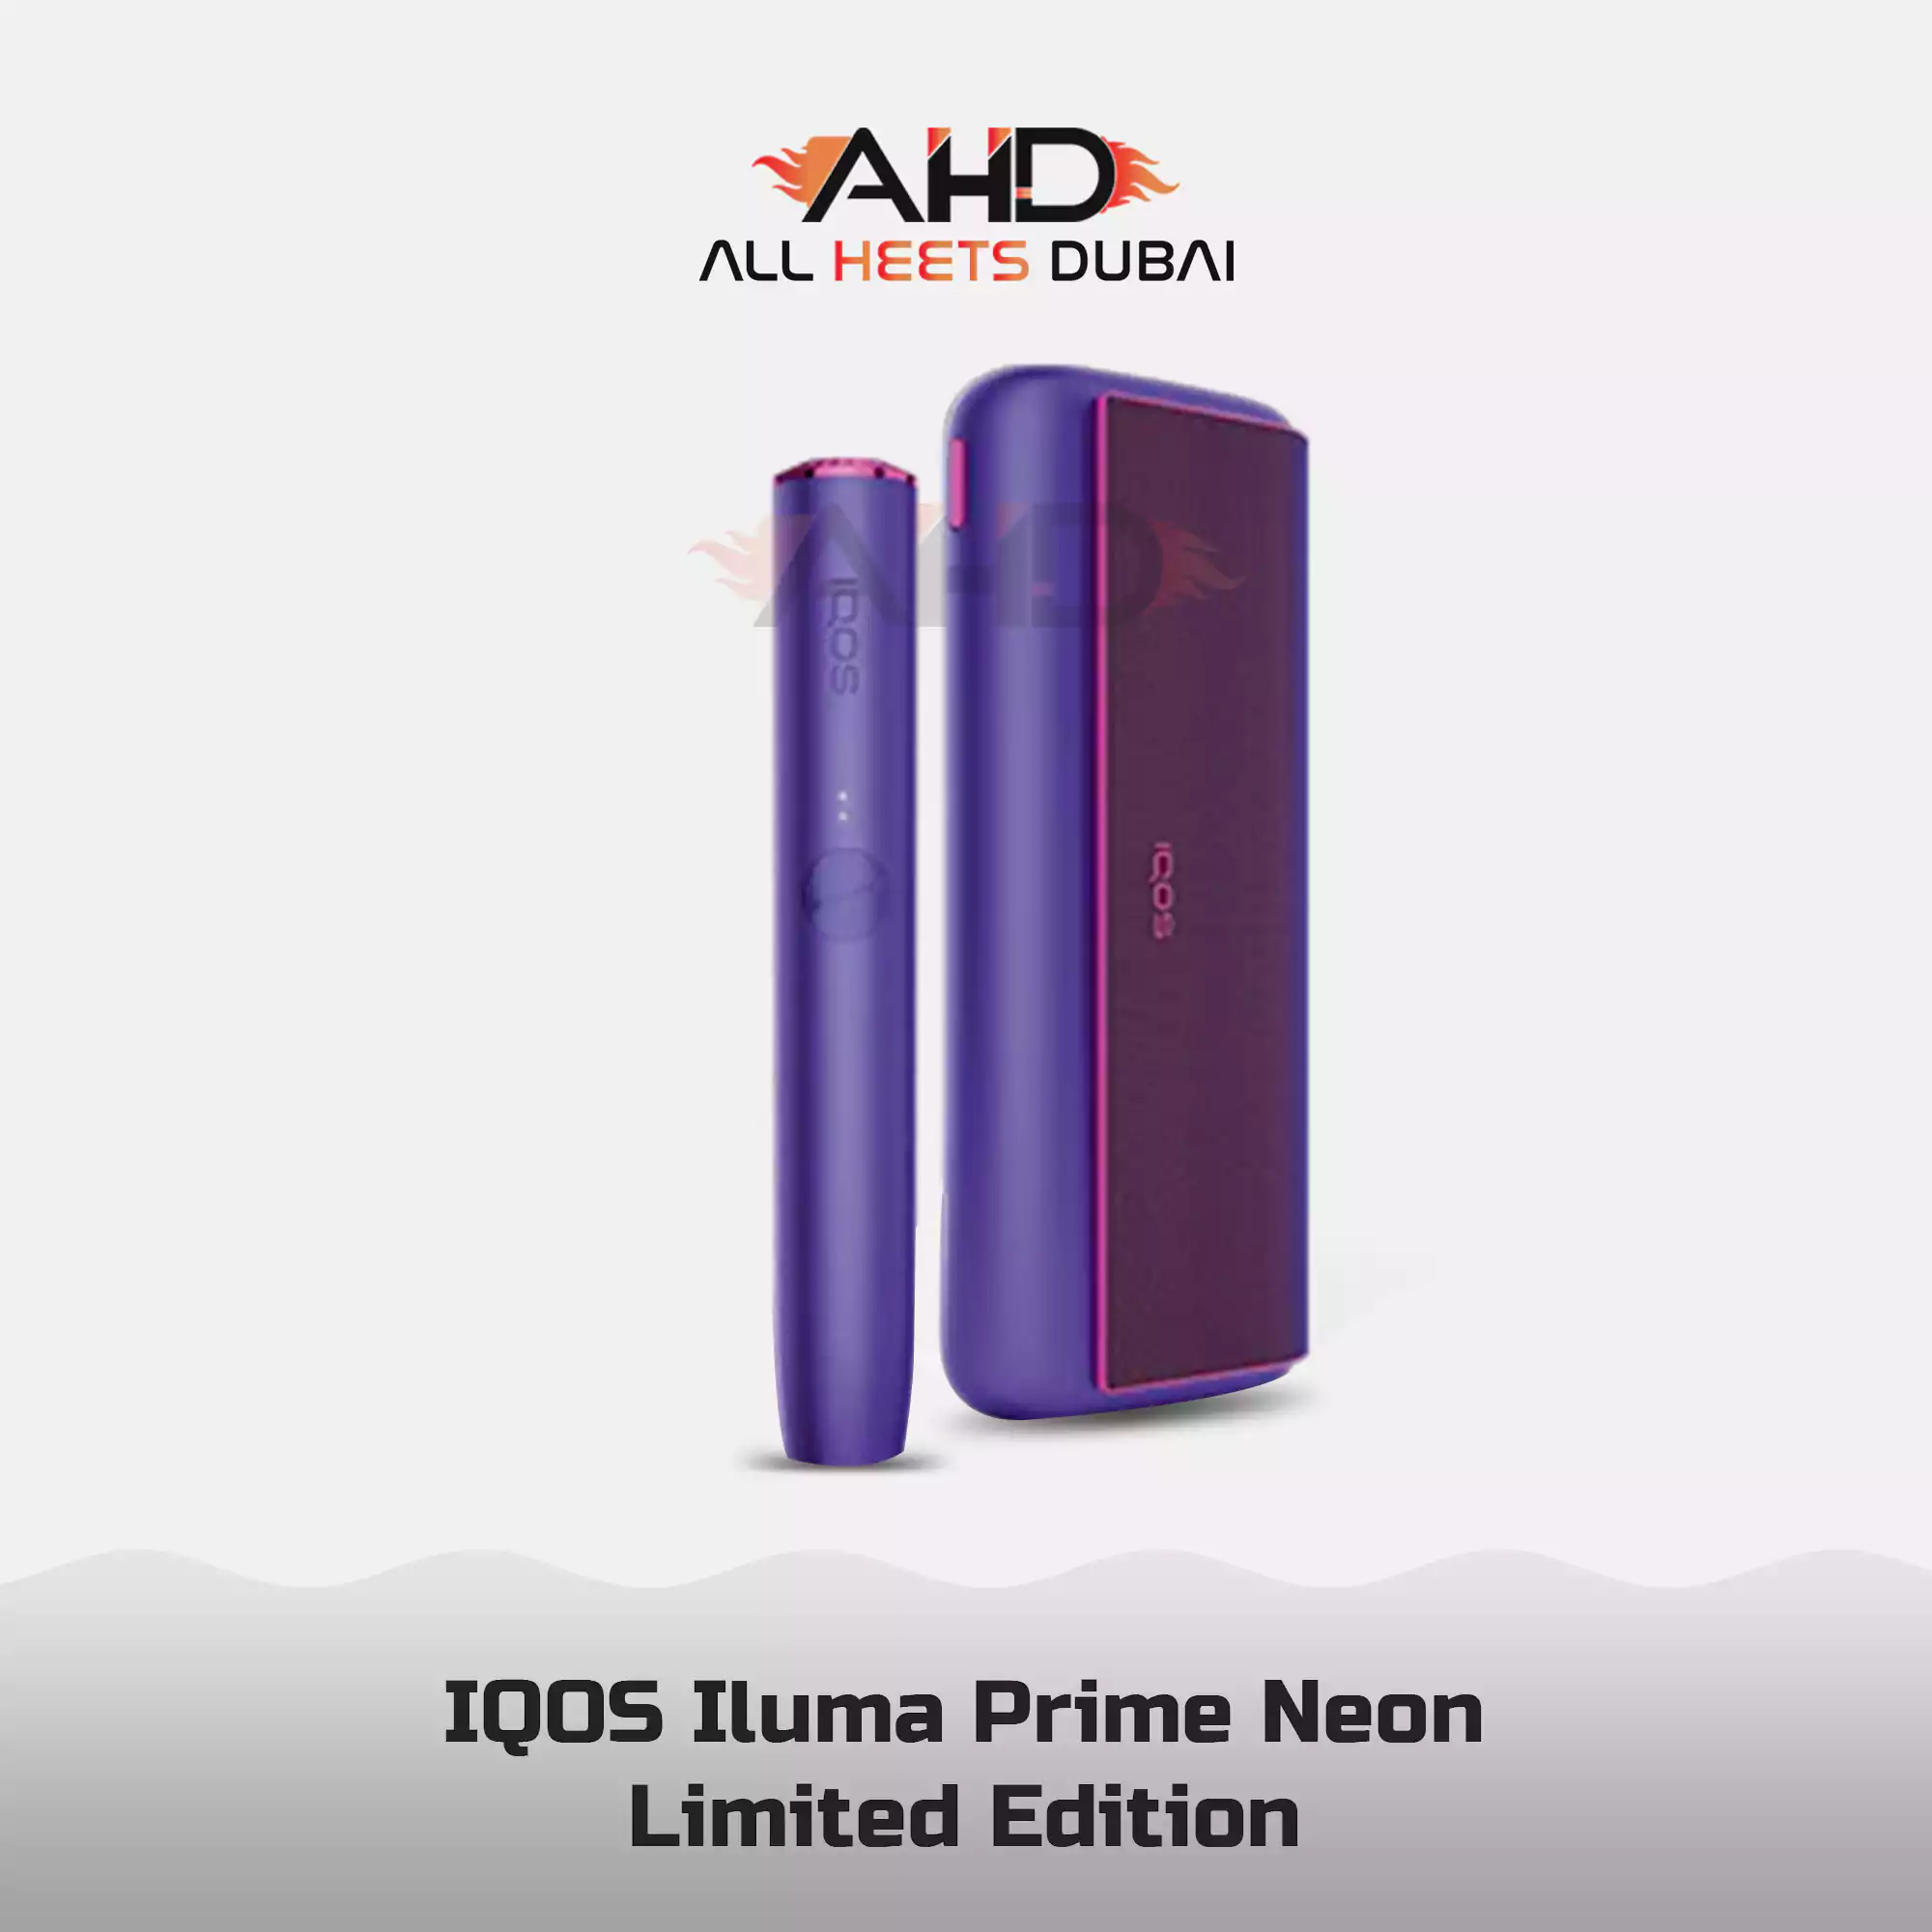 IQOS Iluma Prime Neon Limited Edition Dubai UAE - In Dubai